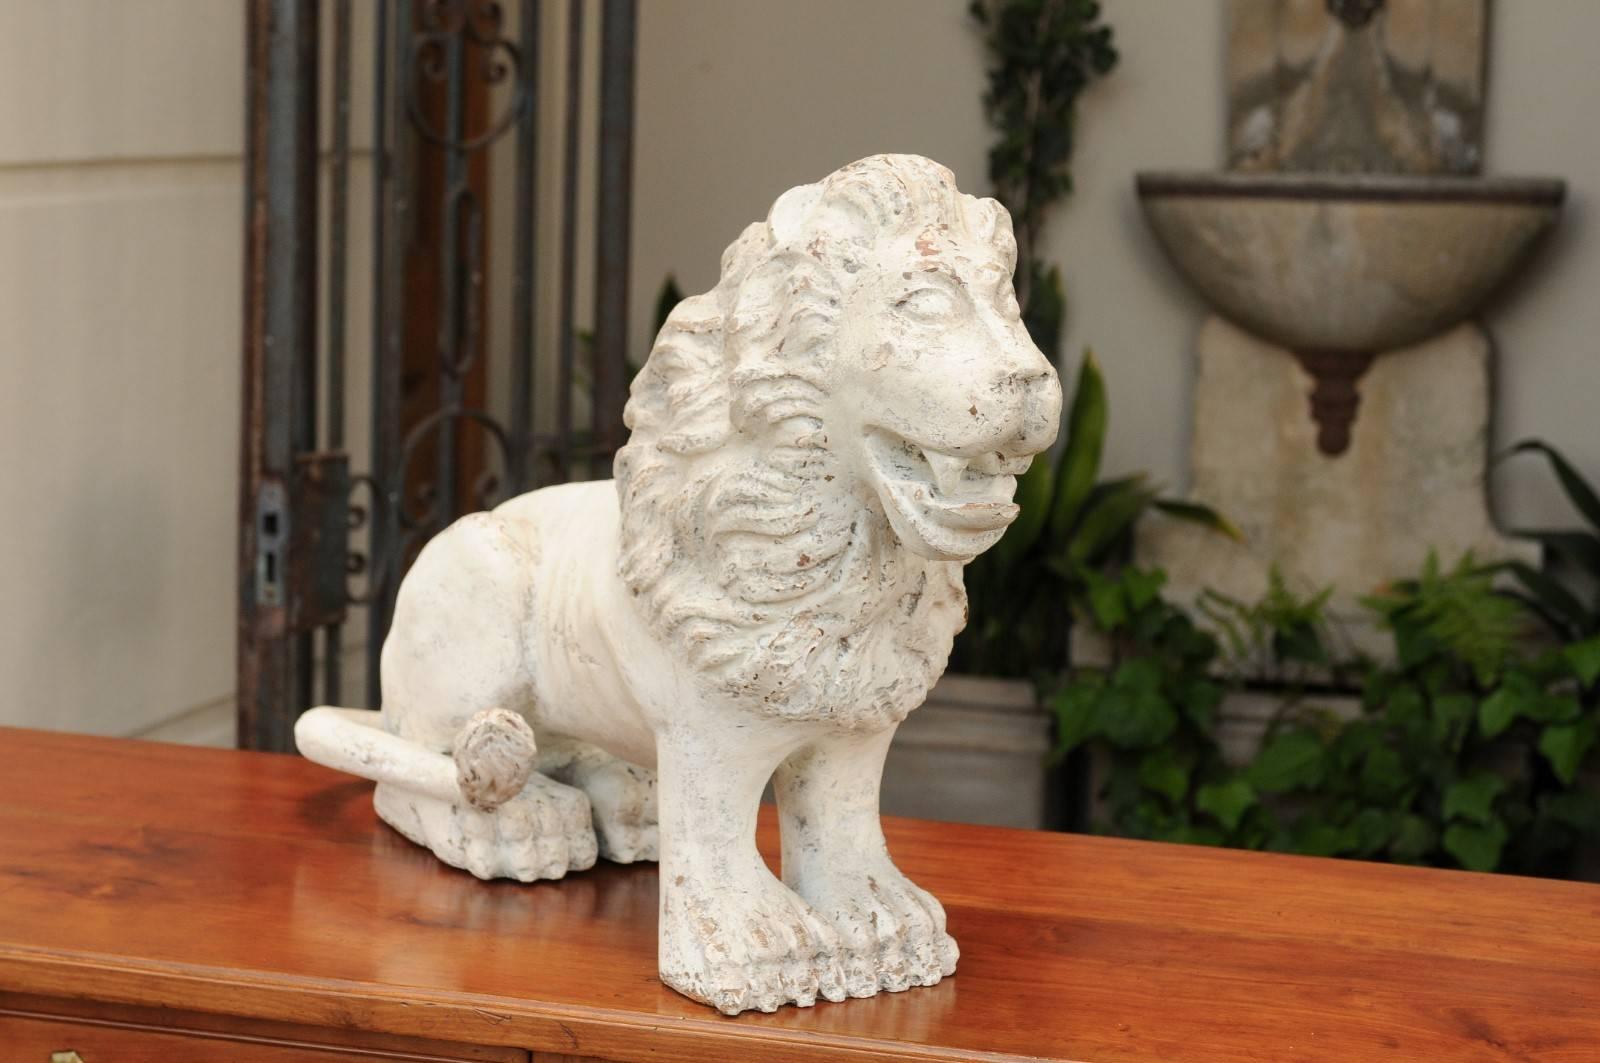 Ein geschnitzter und bemalter italienischer Holzlöwe aus dem frühen 19. Jahrhundert. Wie könnte man sich nicht von diesem exquisiten gemalten Löwen verzaubern lassen, der fast zu lächeln scheint? Die Skulptur hat einen Hauch von Archaismus, der